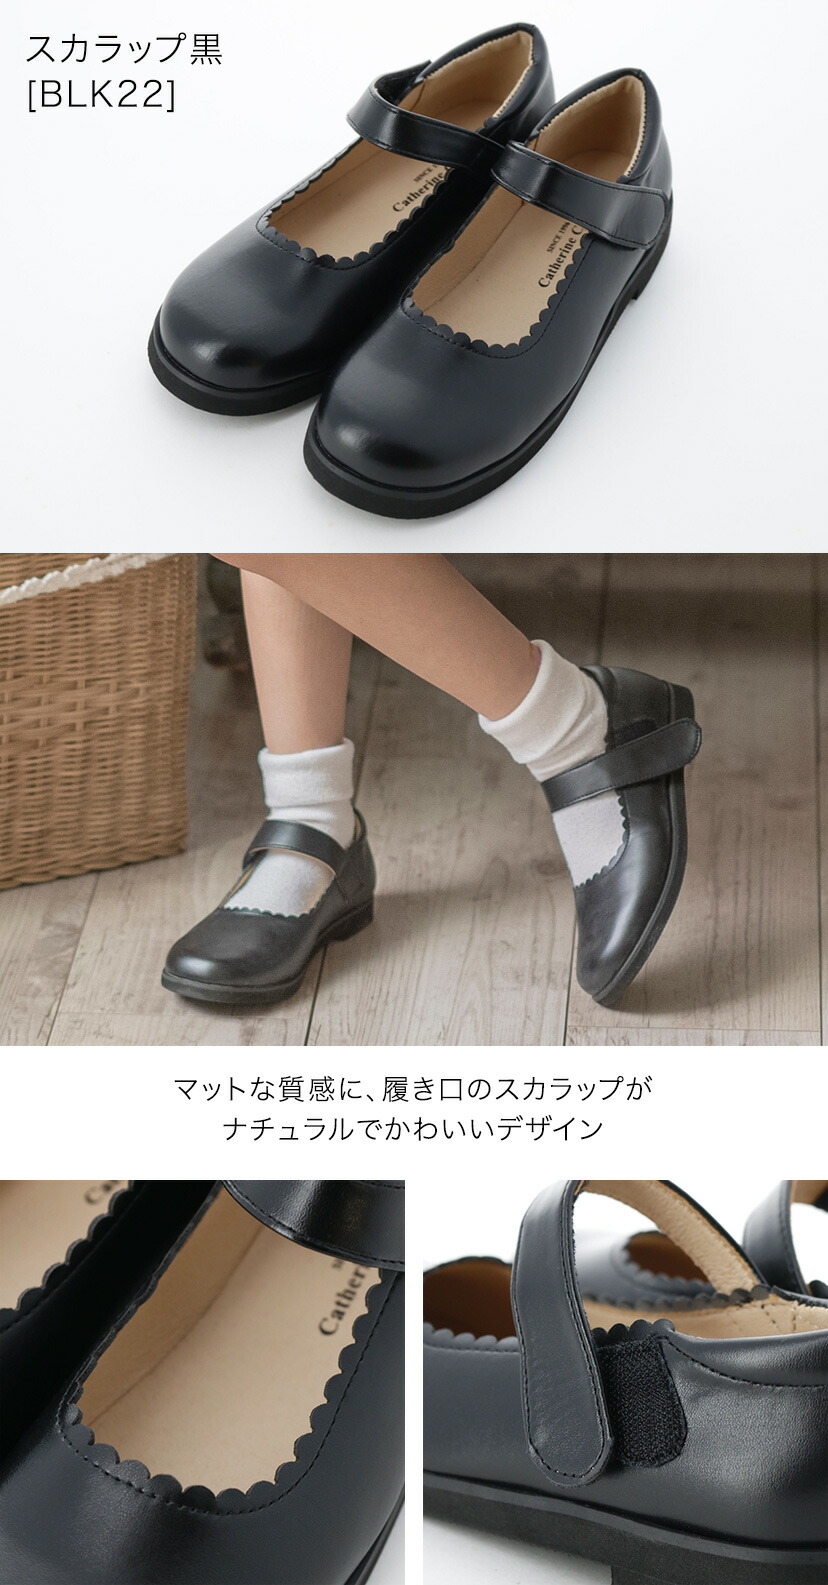 . входить . тип распродажа / формальная обувь one ремешок формальная обувь девочка Kids входить . тип церемония окончания TAK Katharine kote-ji